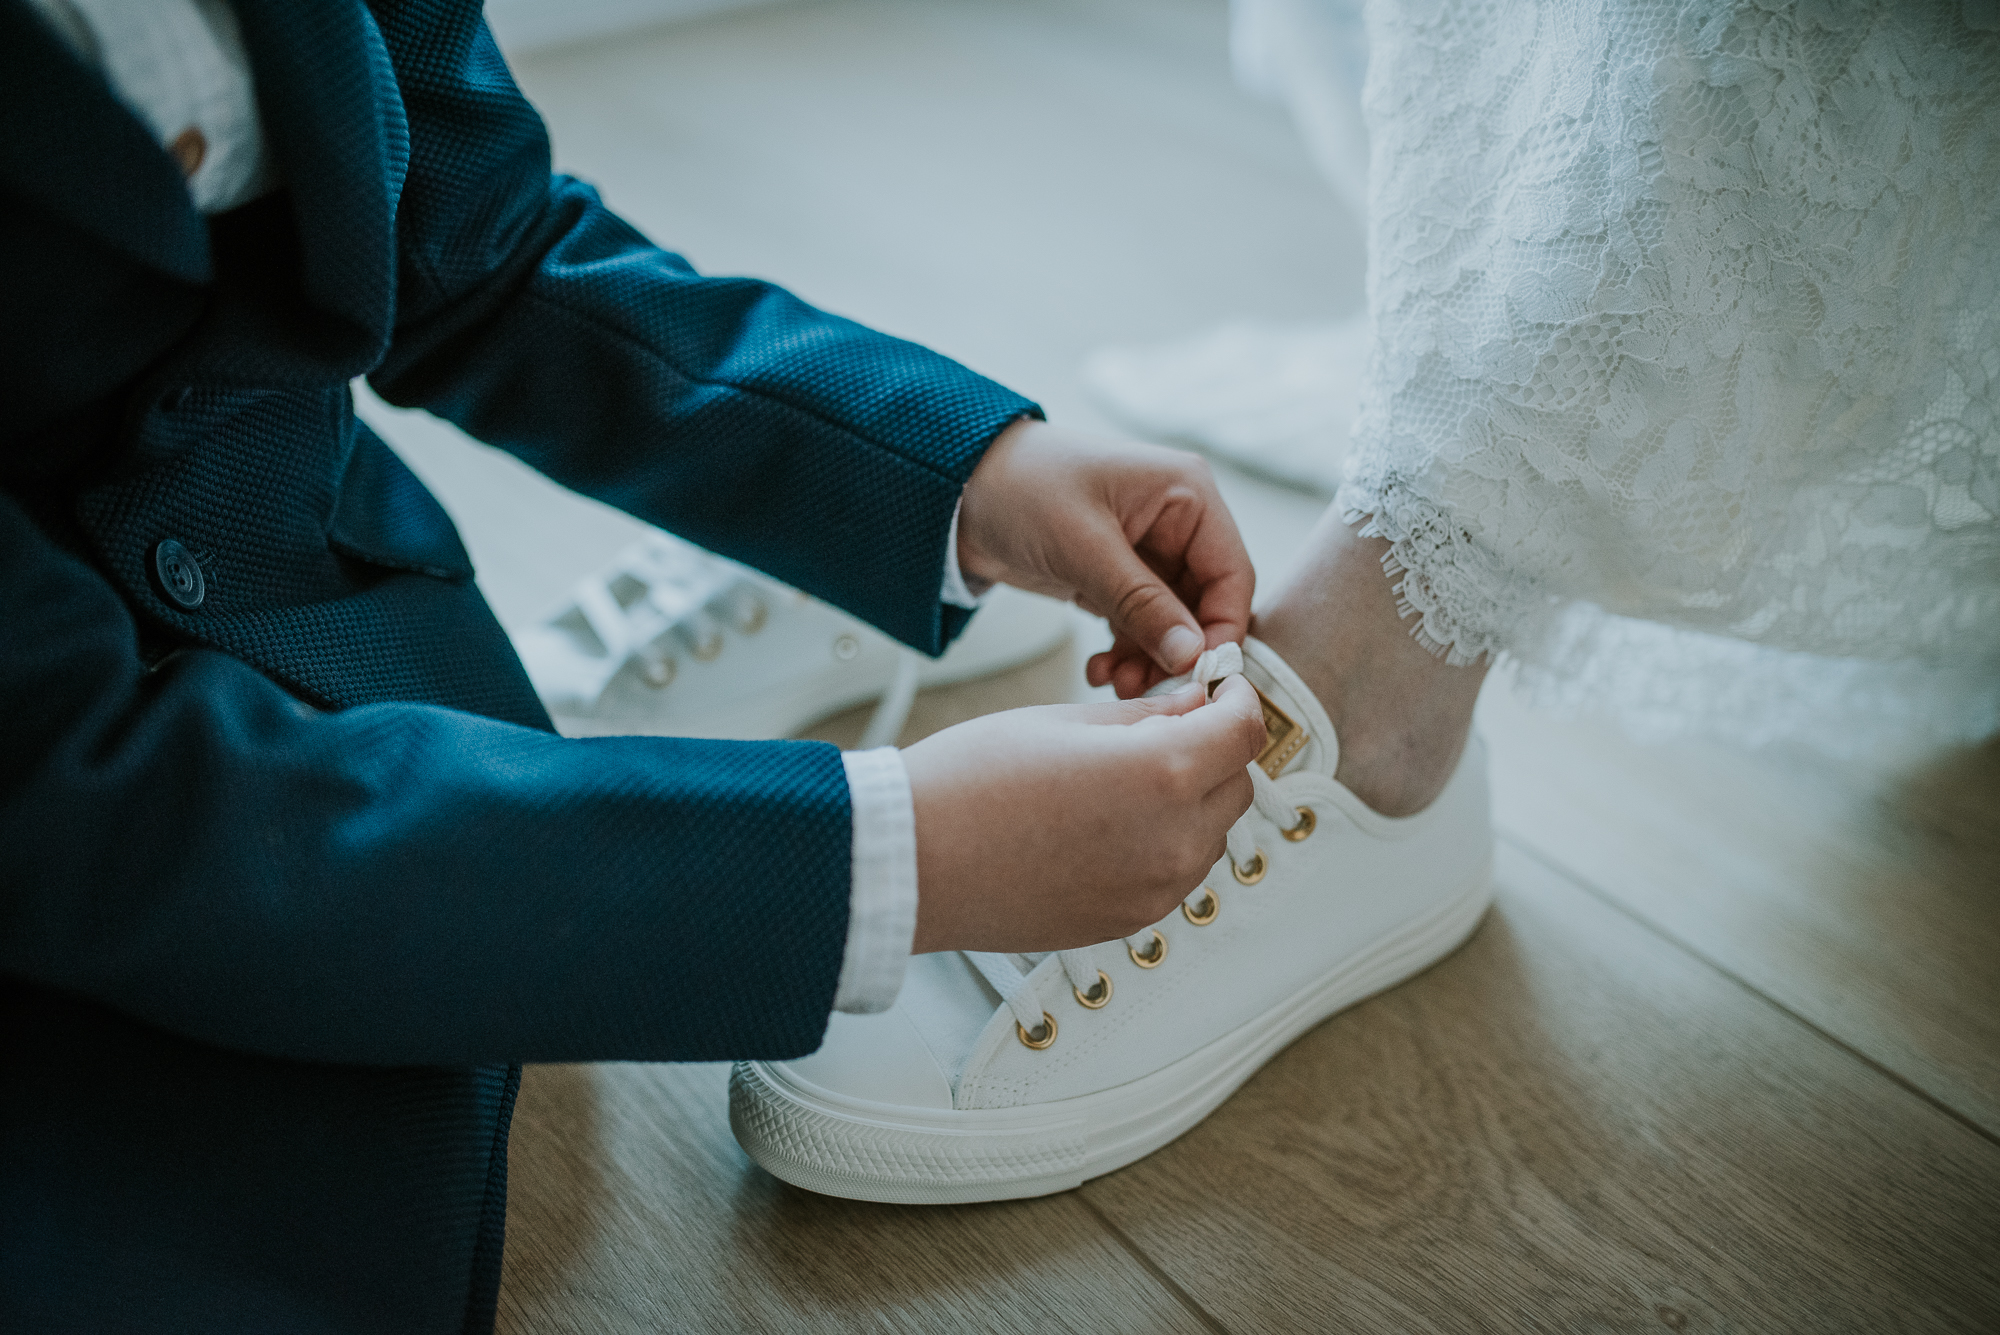 De voorbereidingen van de bruid. Zoontje strikt de veters van de sneakers. Trouwreportage door trouwfotograaf Nickie Fotografie uit Dokkum, Friesland.